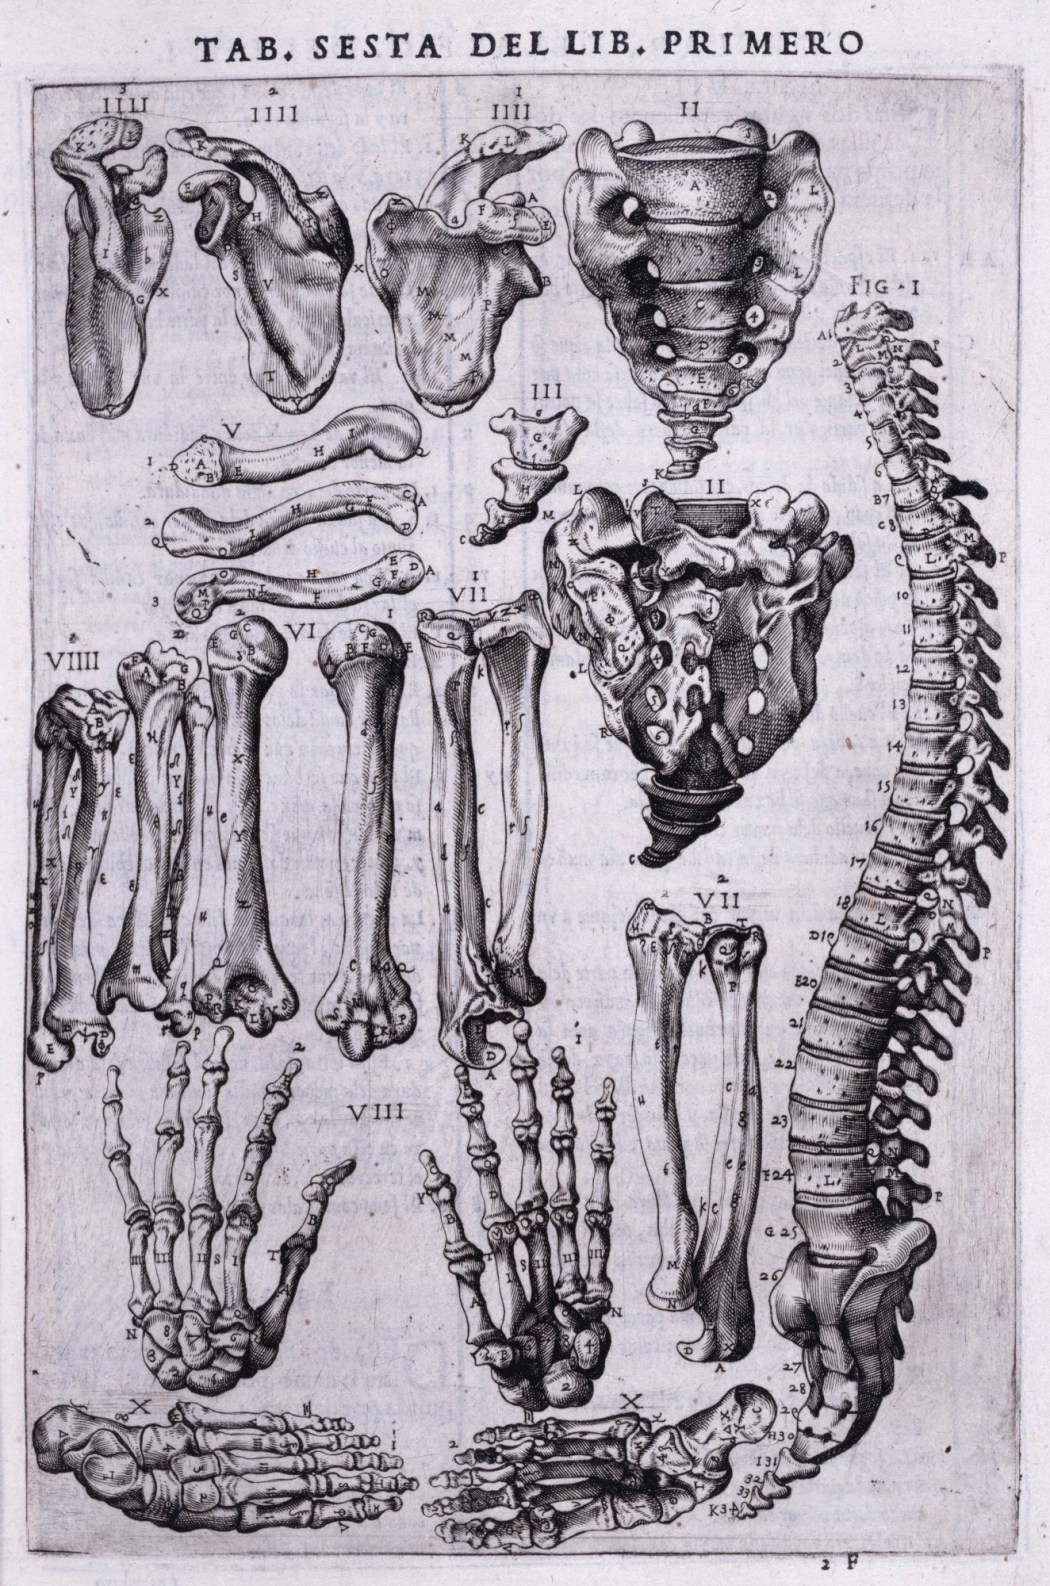 De Corporis Humani Fabrica Libri Septem pg 163 - Andreas Vesalius, 1543 |  Medical drawings, Andreas vesalius, Medieval books